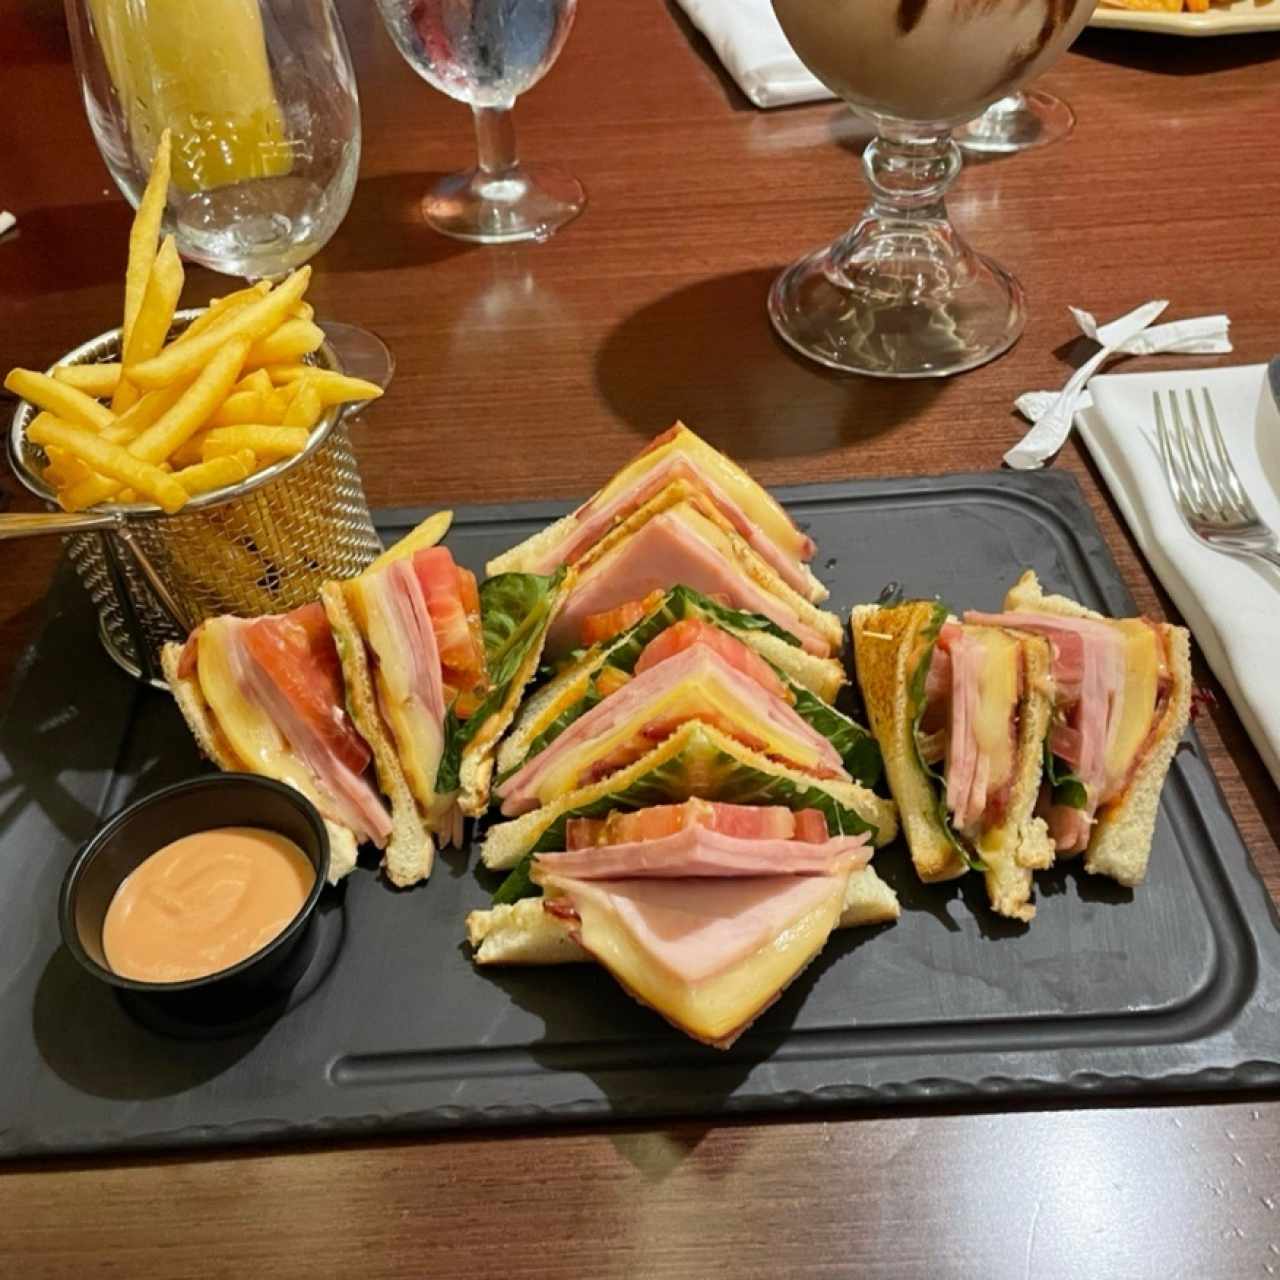 Club sanwich 